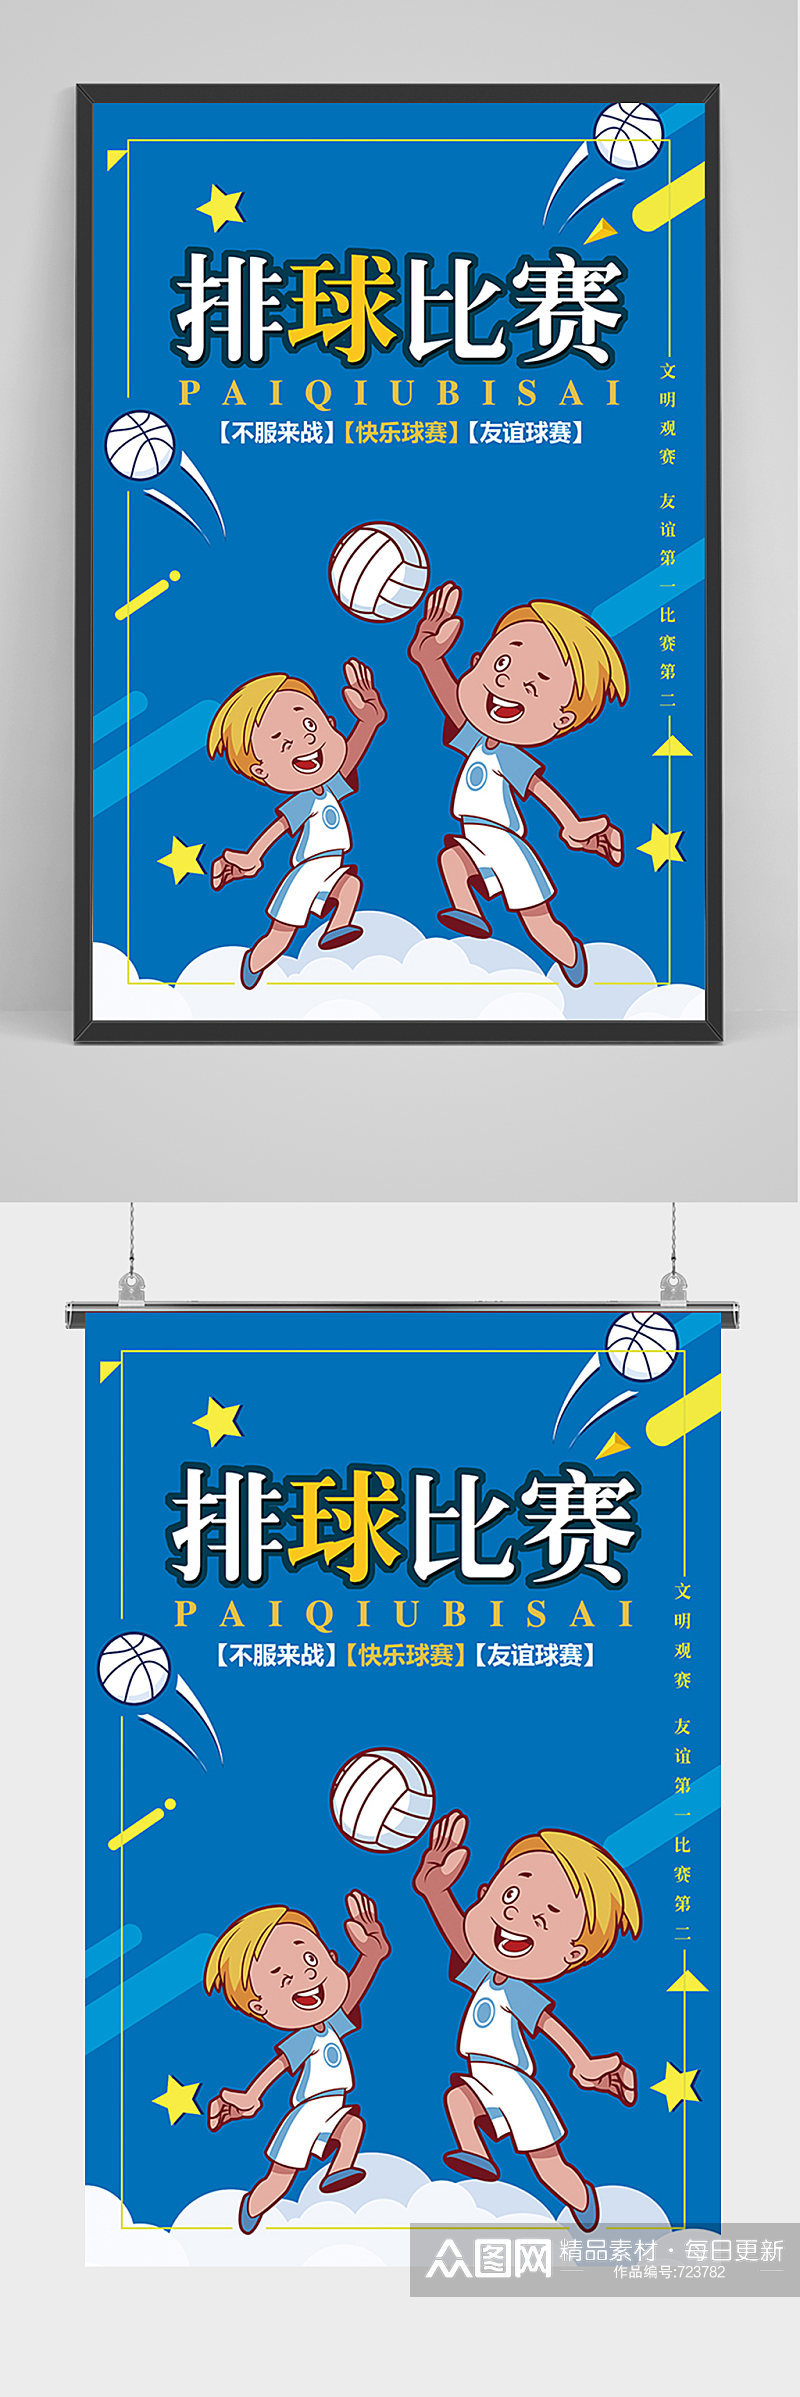 蓝色卡通少儿排球比赛海报素材